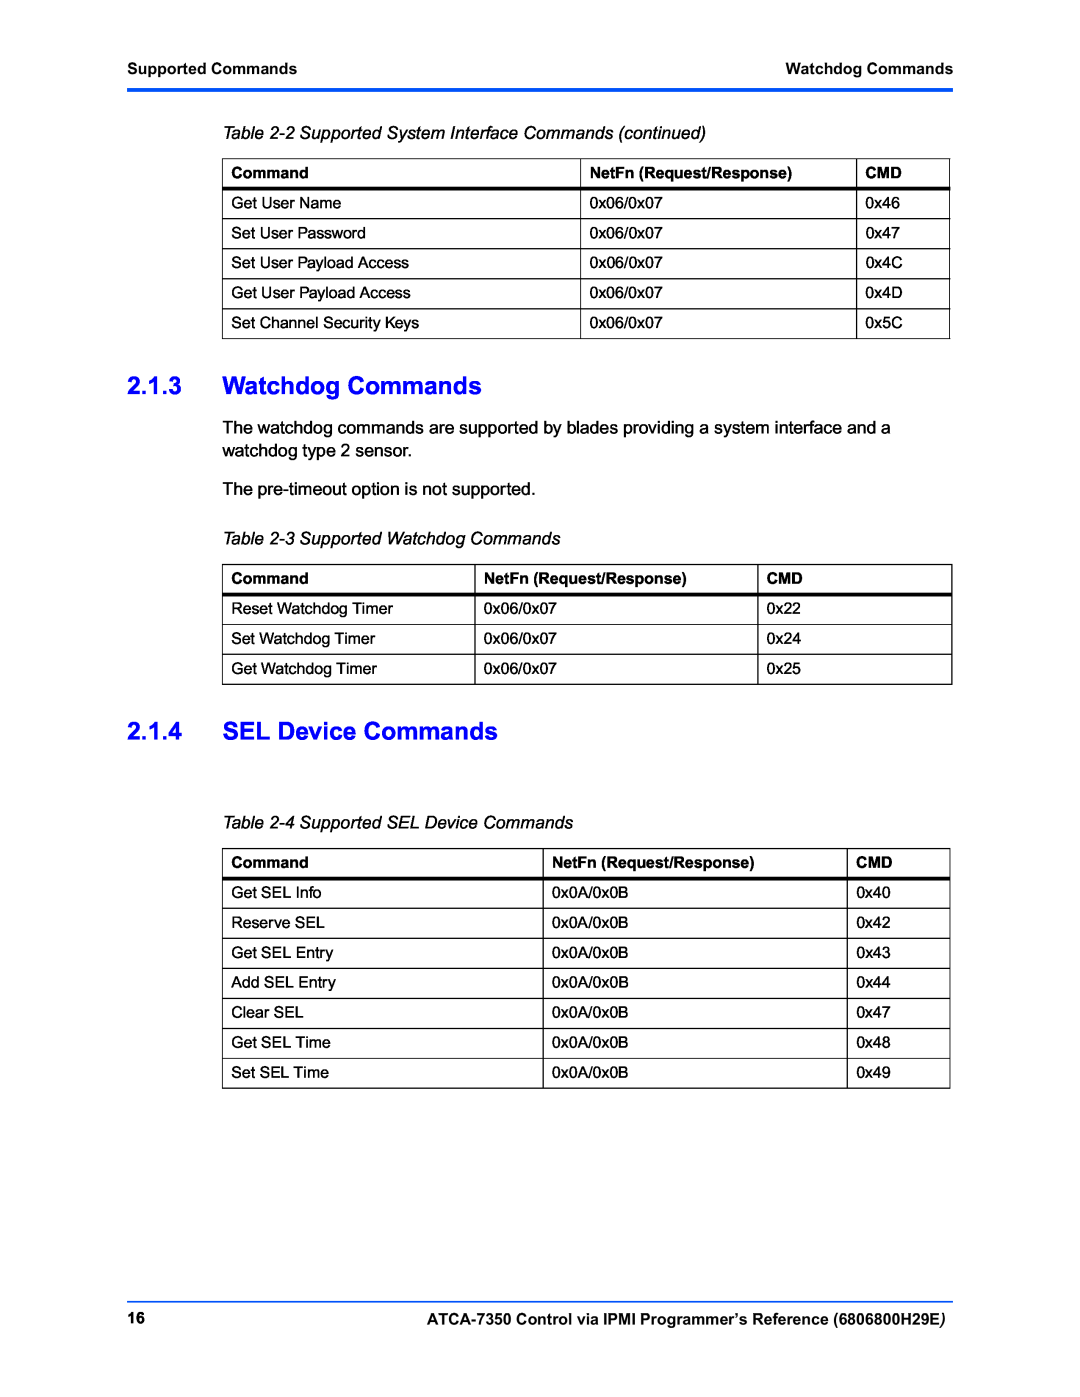 Emerson ATCA-7350 manual 2.1.3Watchdog Commands, 2.1.4SEL Device Commands, Supported CommandsWatchdog Commands 